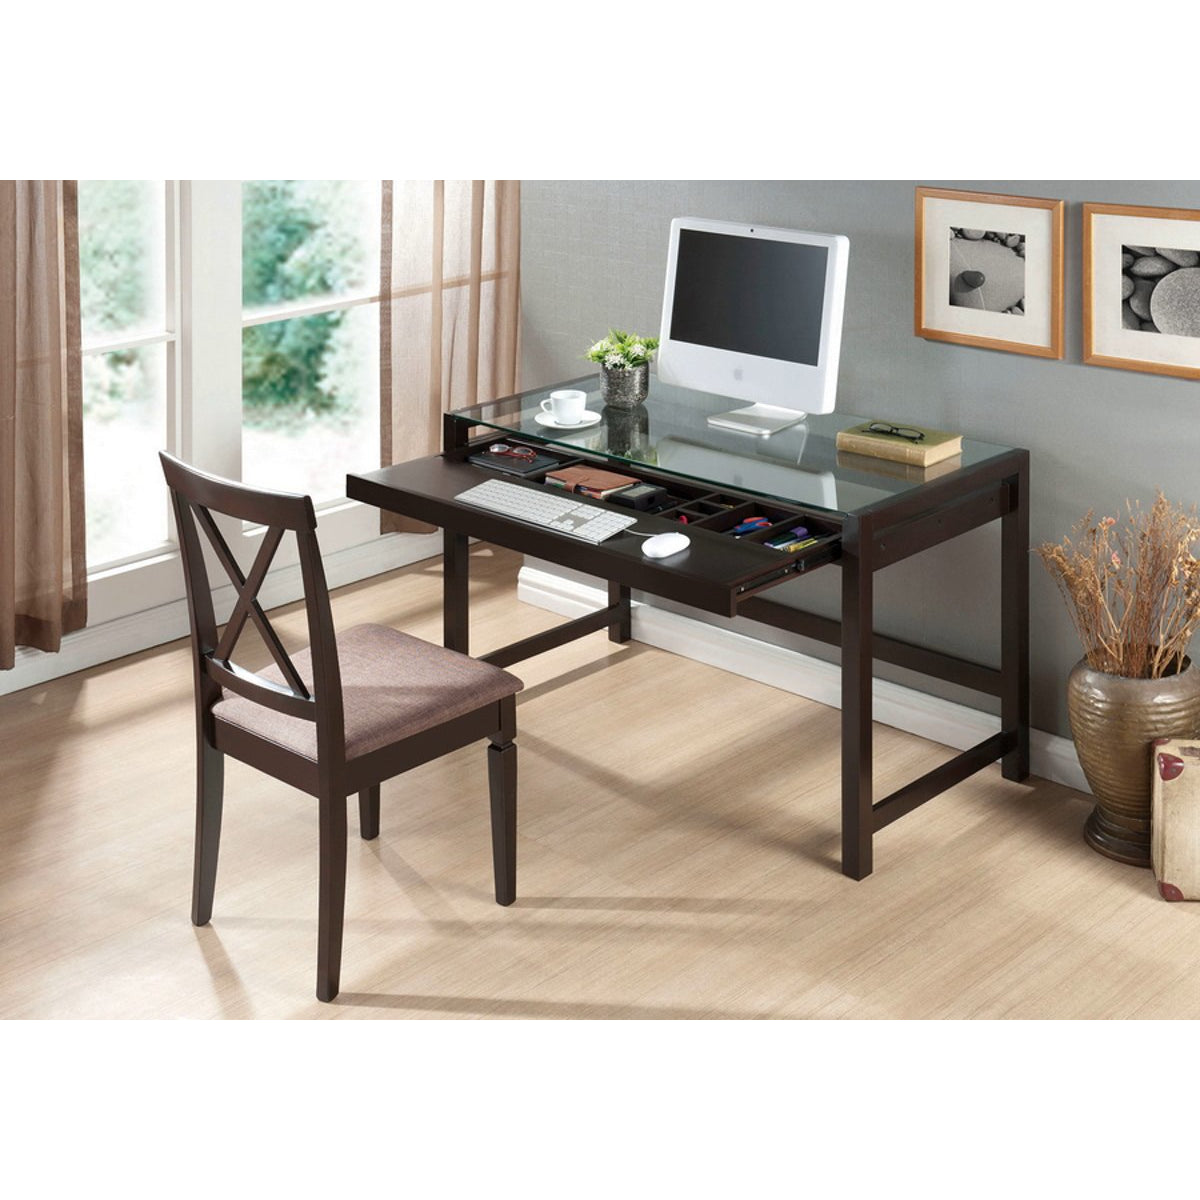 Baxton Studio Idabel Dark Brown Wood Modern Desk with Glass Top Baxton Studio-Desks-Minimal And Modern - 1